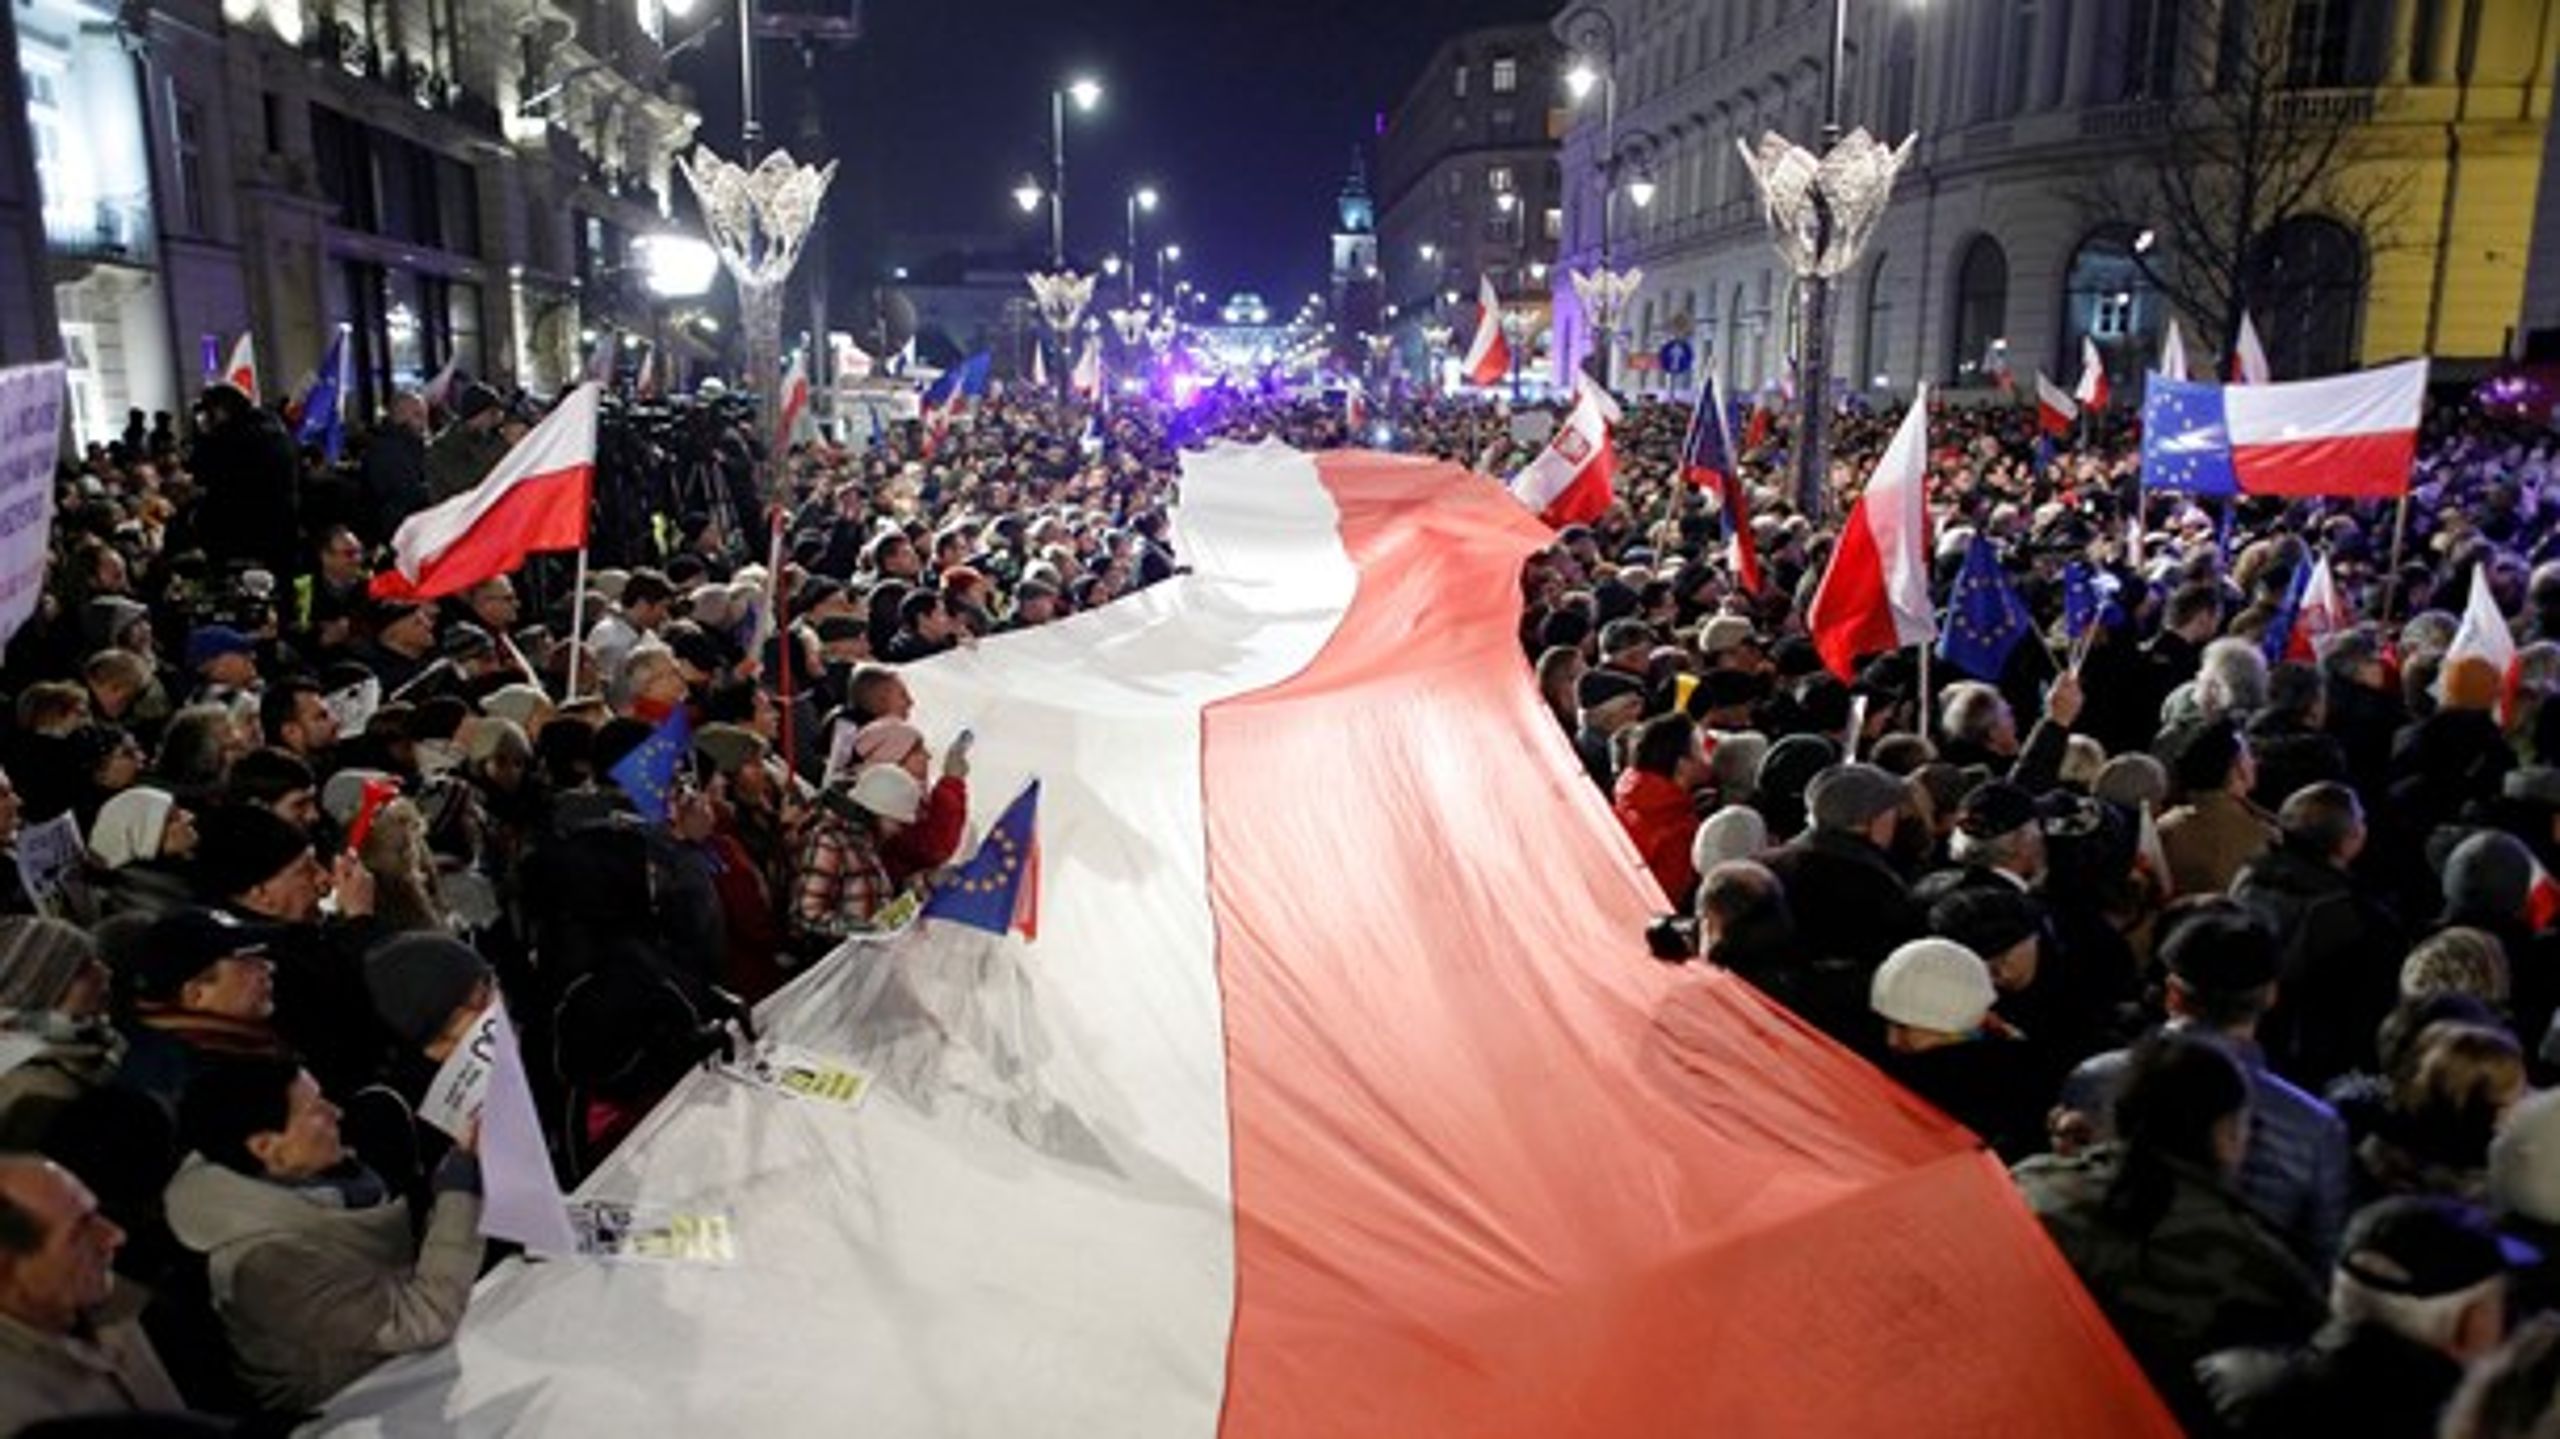 Mange polakker demonstrerede i 2017 mod regeringens reformer af domstolene, som også har udløst kritik fra EU. Alligevel ser regeringspartiet ud til at få et godt valg igen her i 2019.